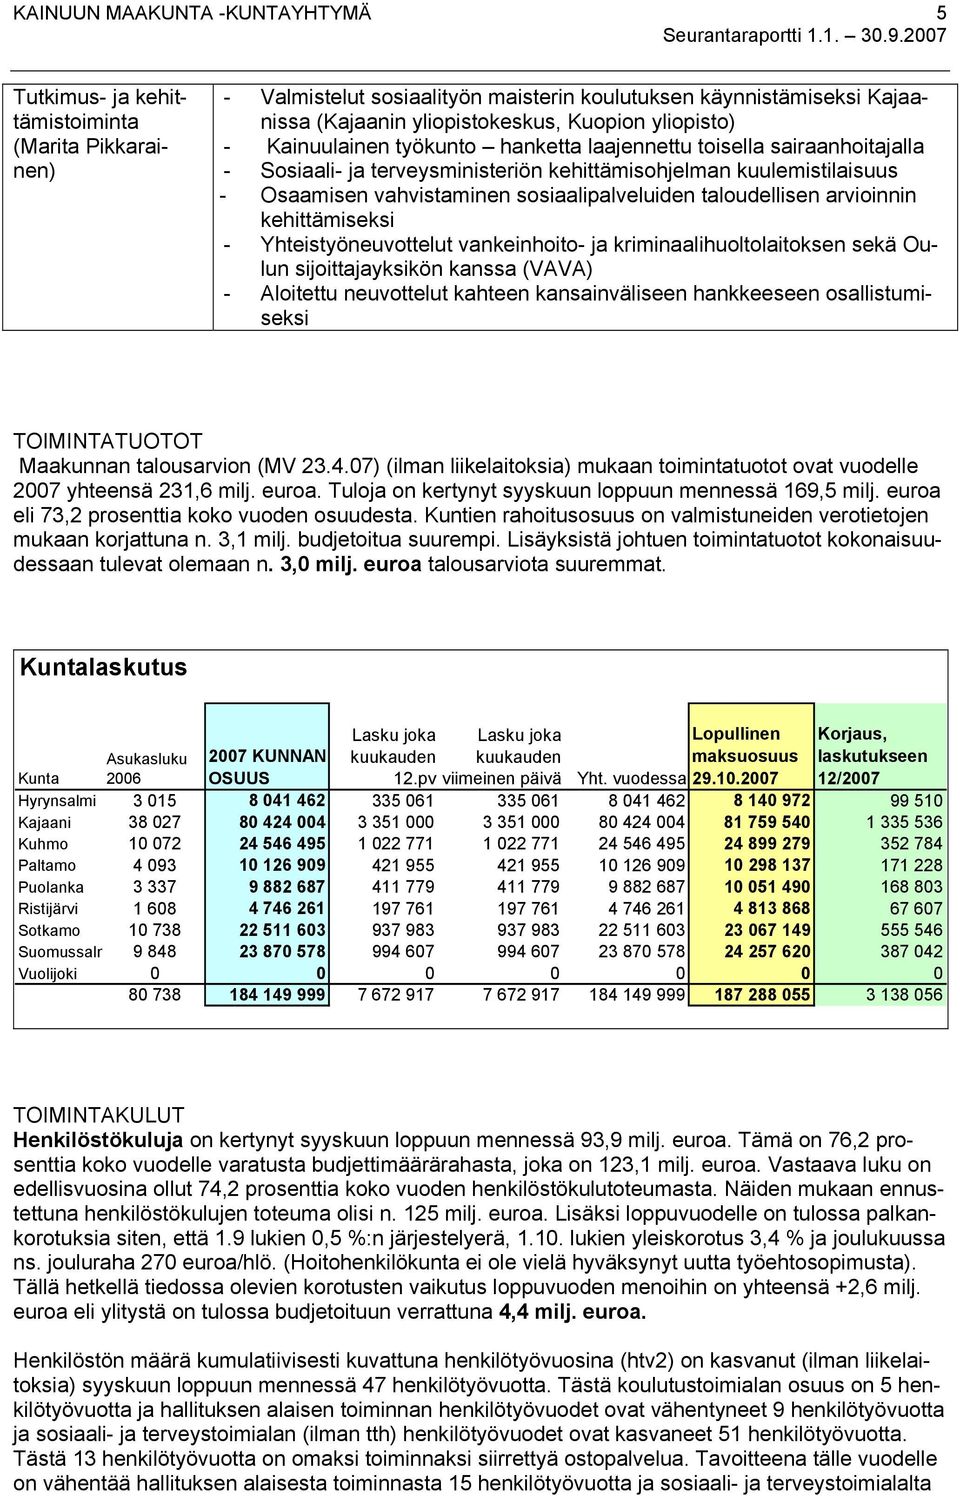 taloudellisen arvioinnin kehittämiseksi - Yhteistyöneuvottelut vankeinhoito- ja kriminaalihuoltolaitoksen sekä Oulun sijoittajayksikön kanssa (VAVA) - Aloitettu neuvottelut kahteen kansainväliseen